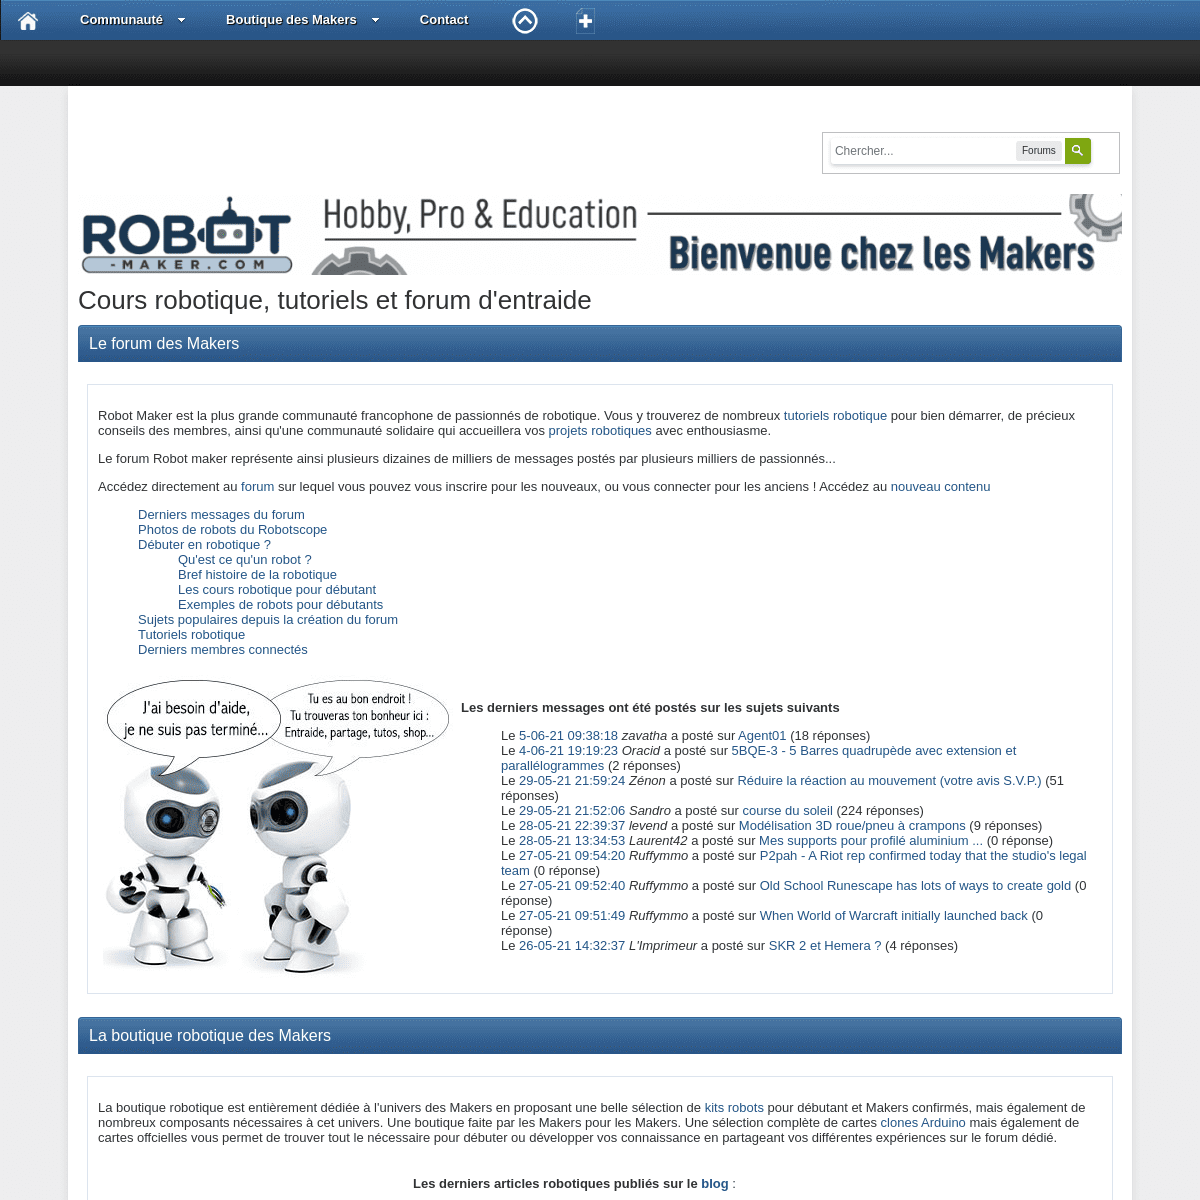 A complete backup of https://robot-maker.com